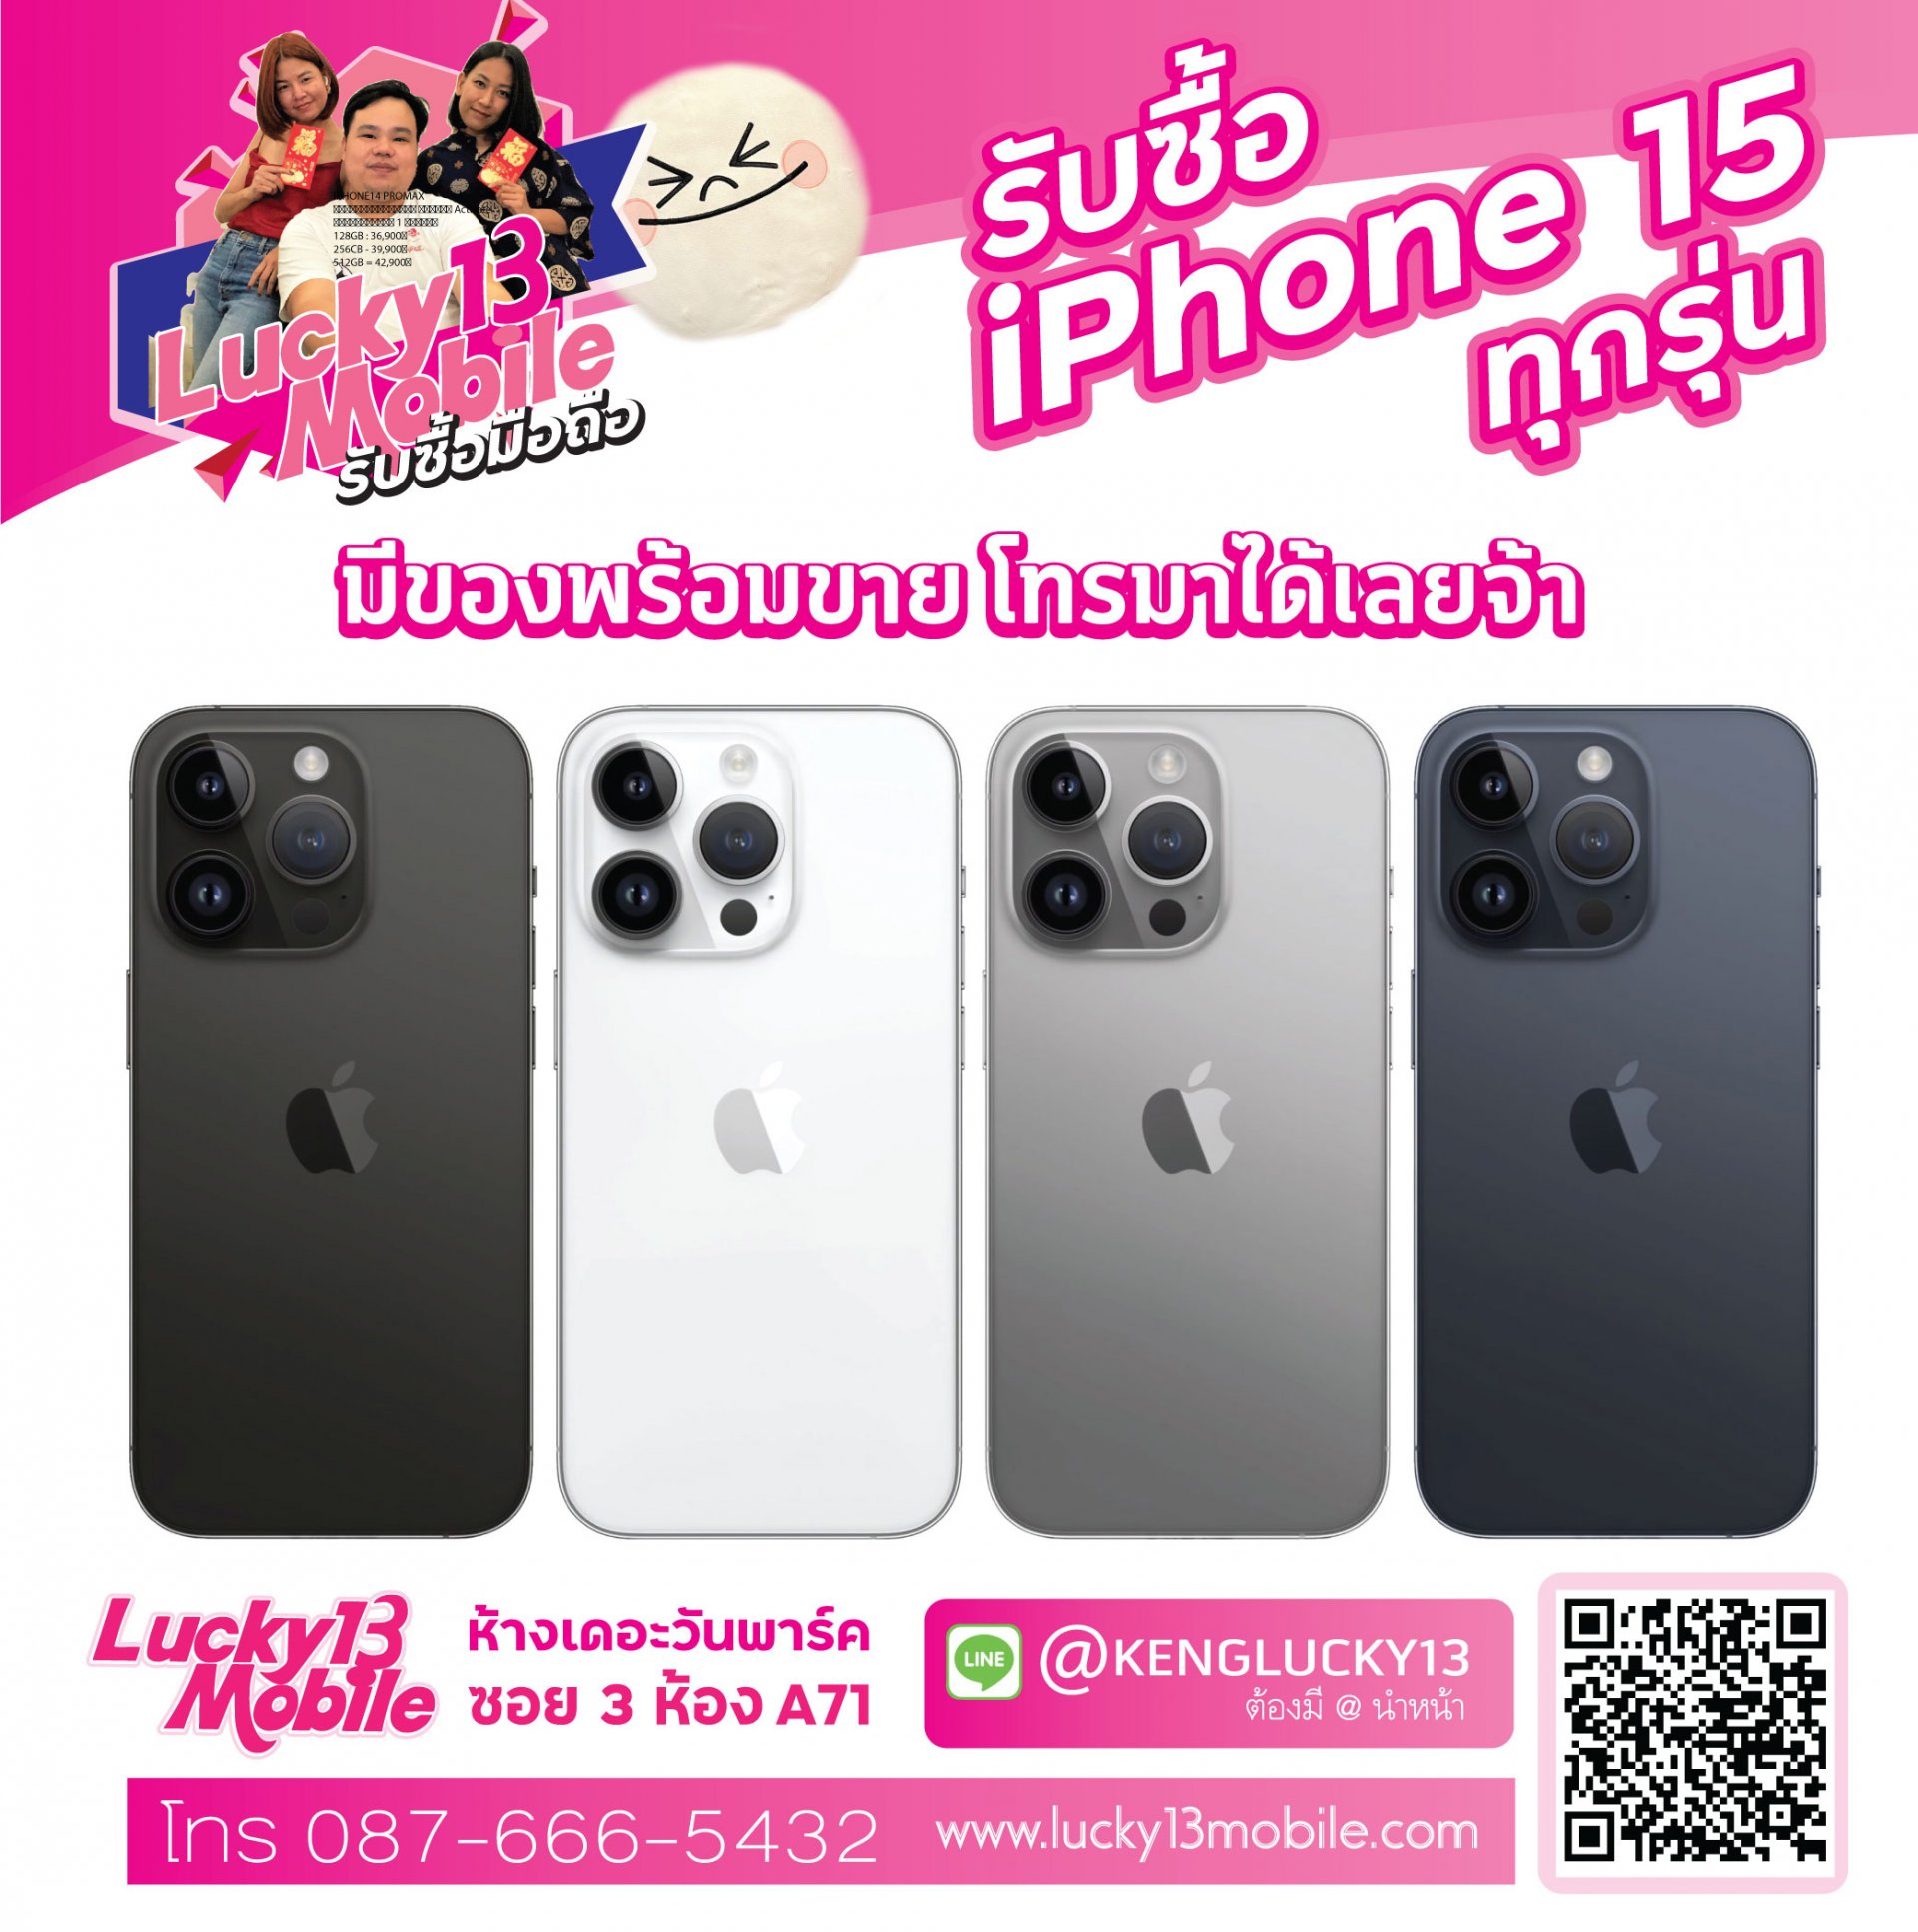 ฺbuy iPhone 15 pro max lucky13mobile